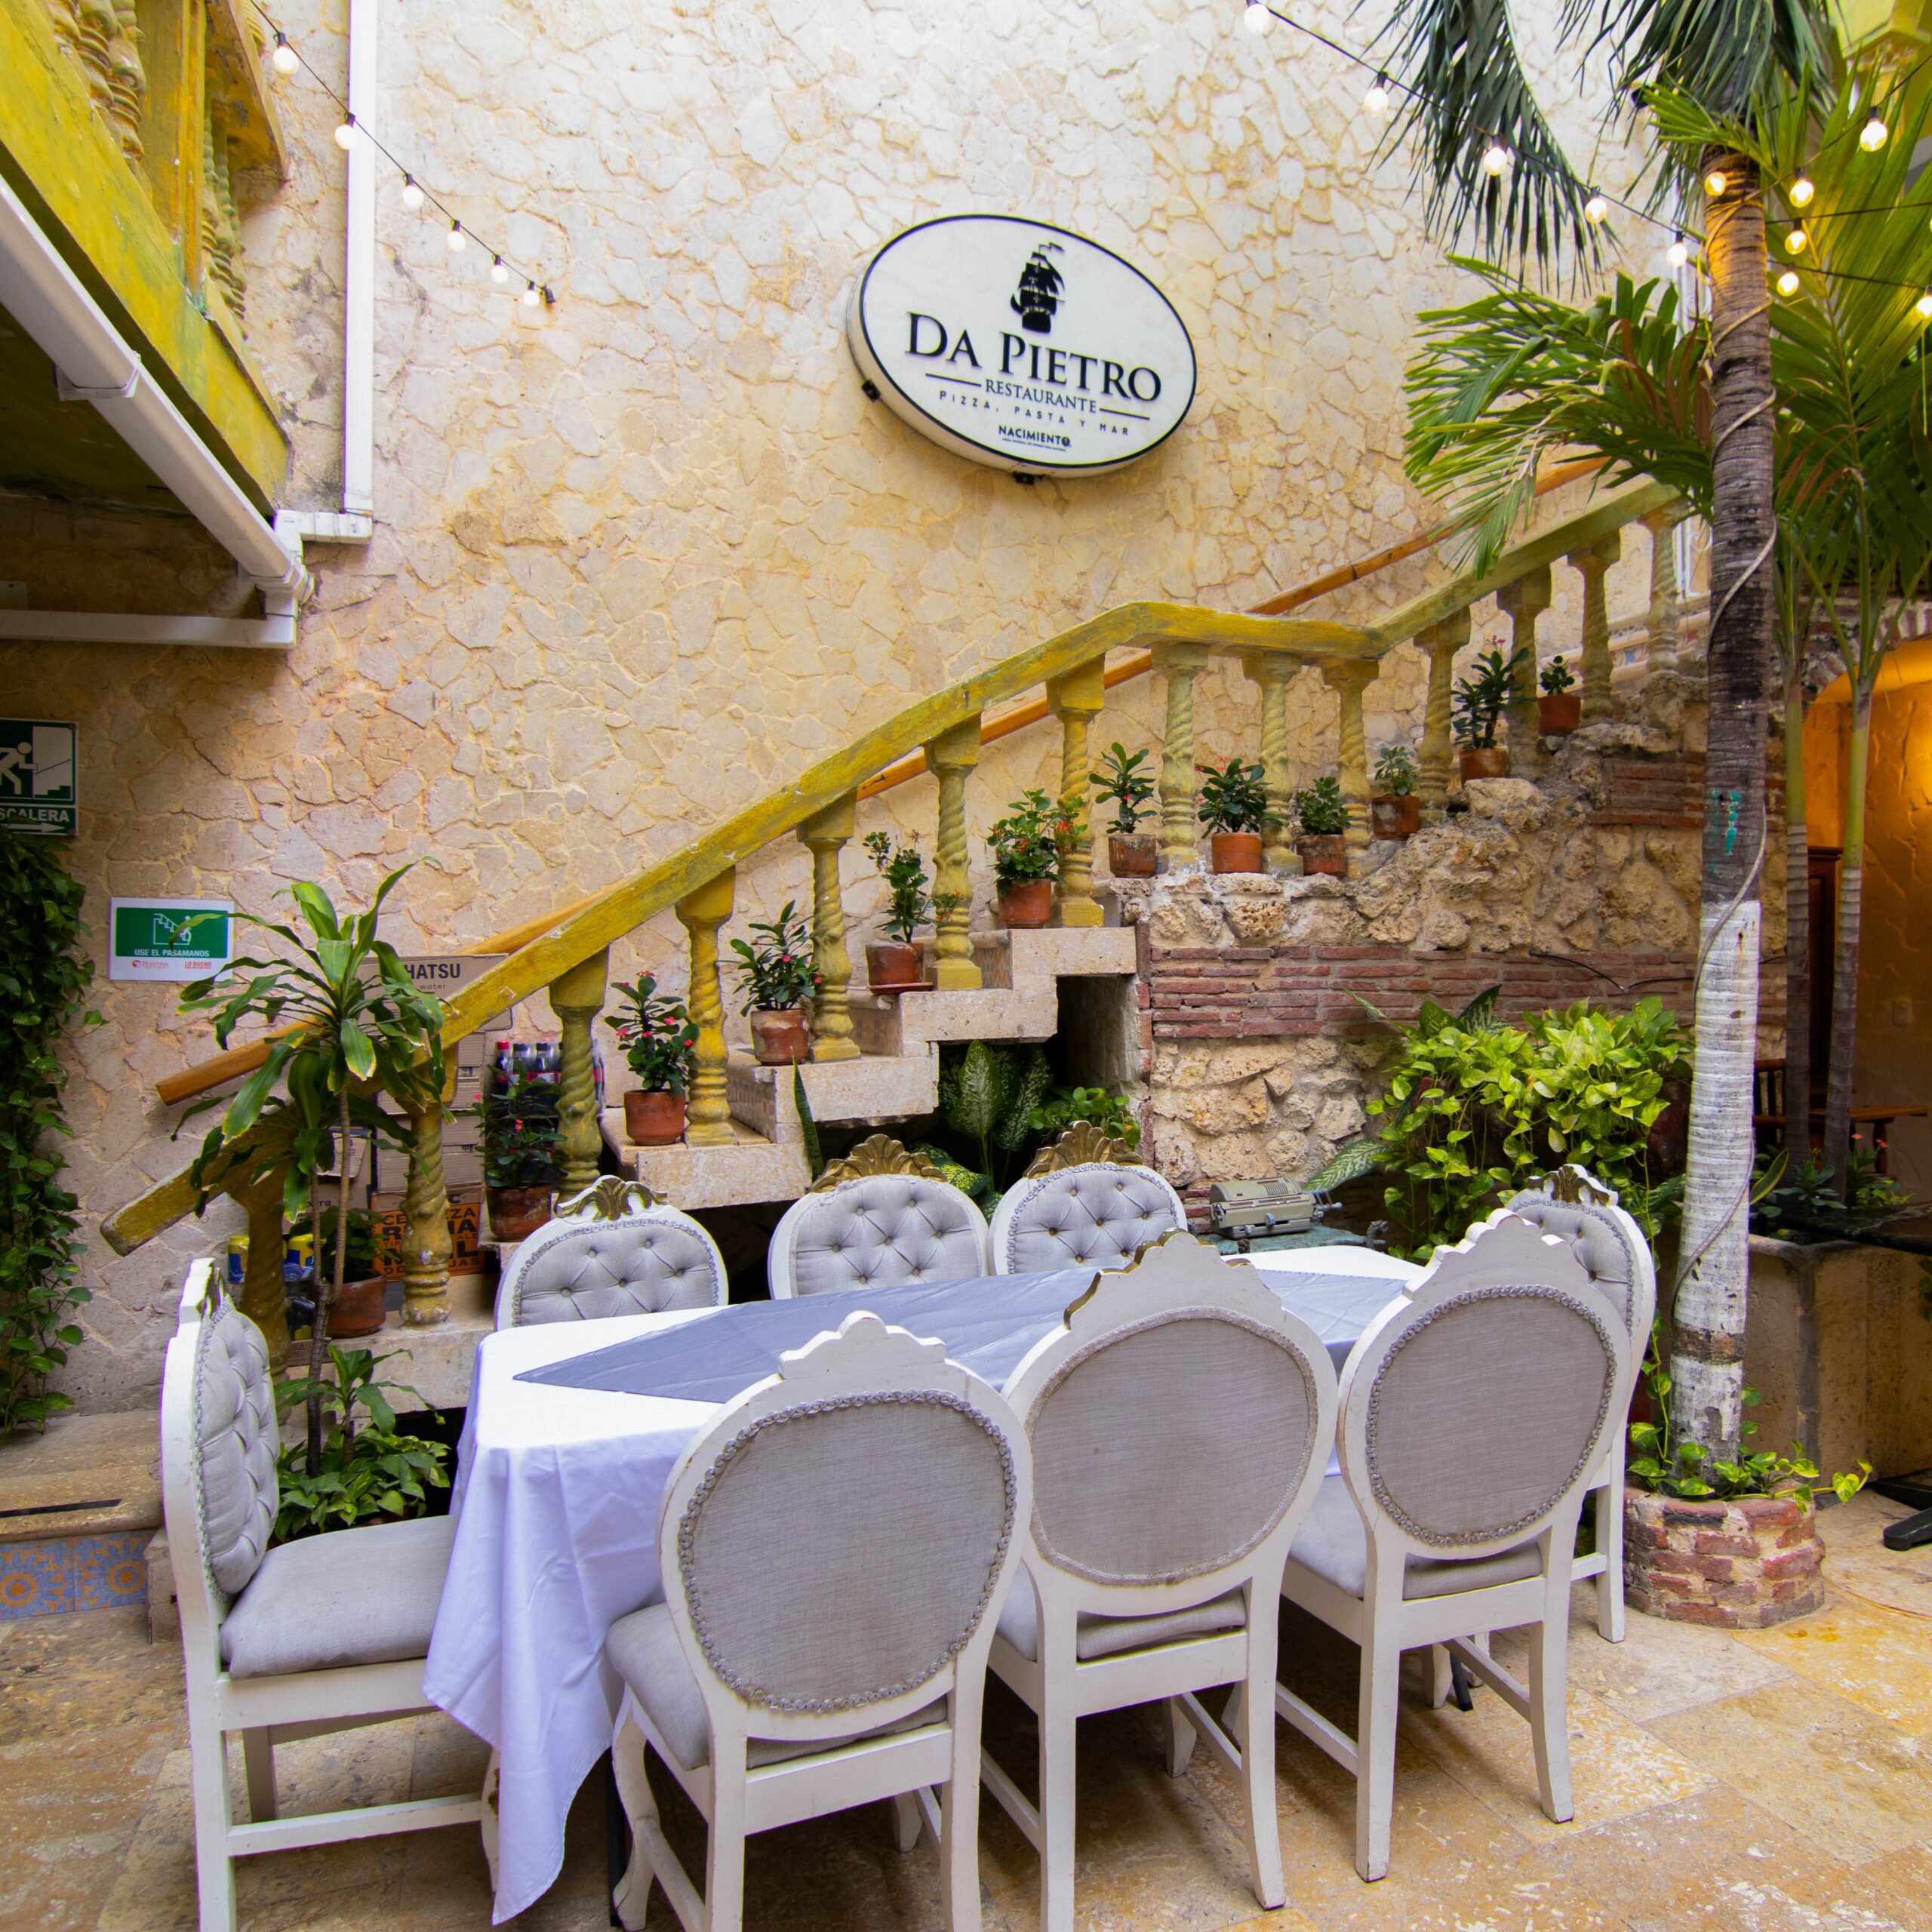 foto-patio-restaurante-da-pietro-Copy-scaled.jpg